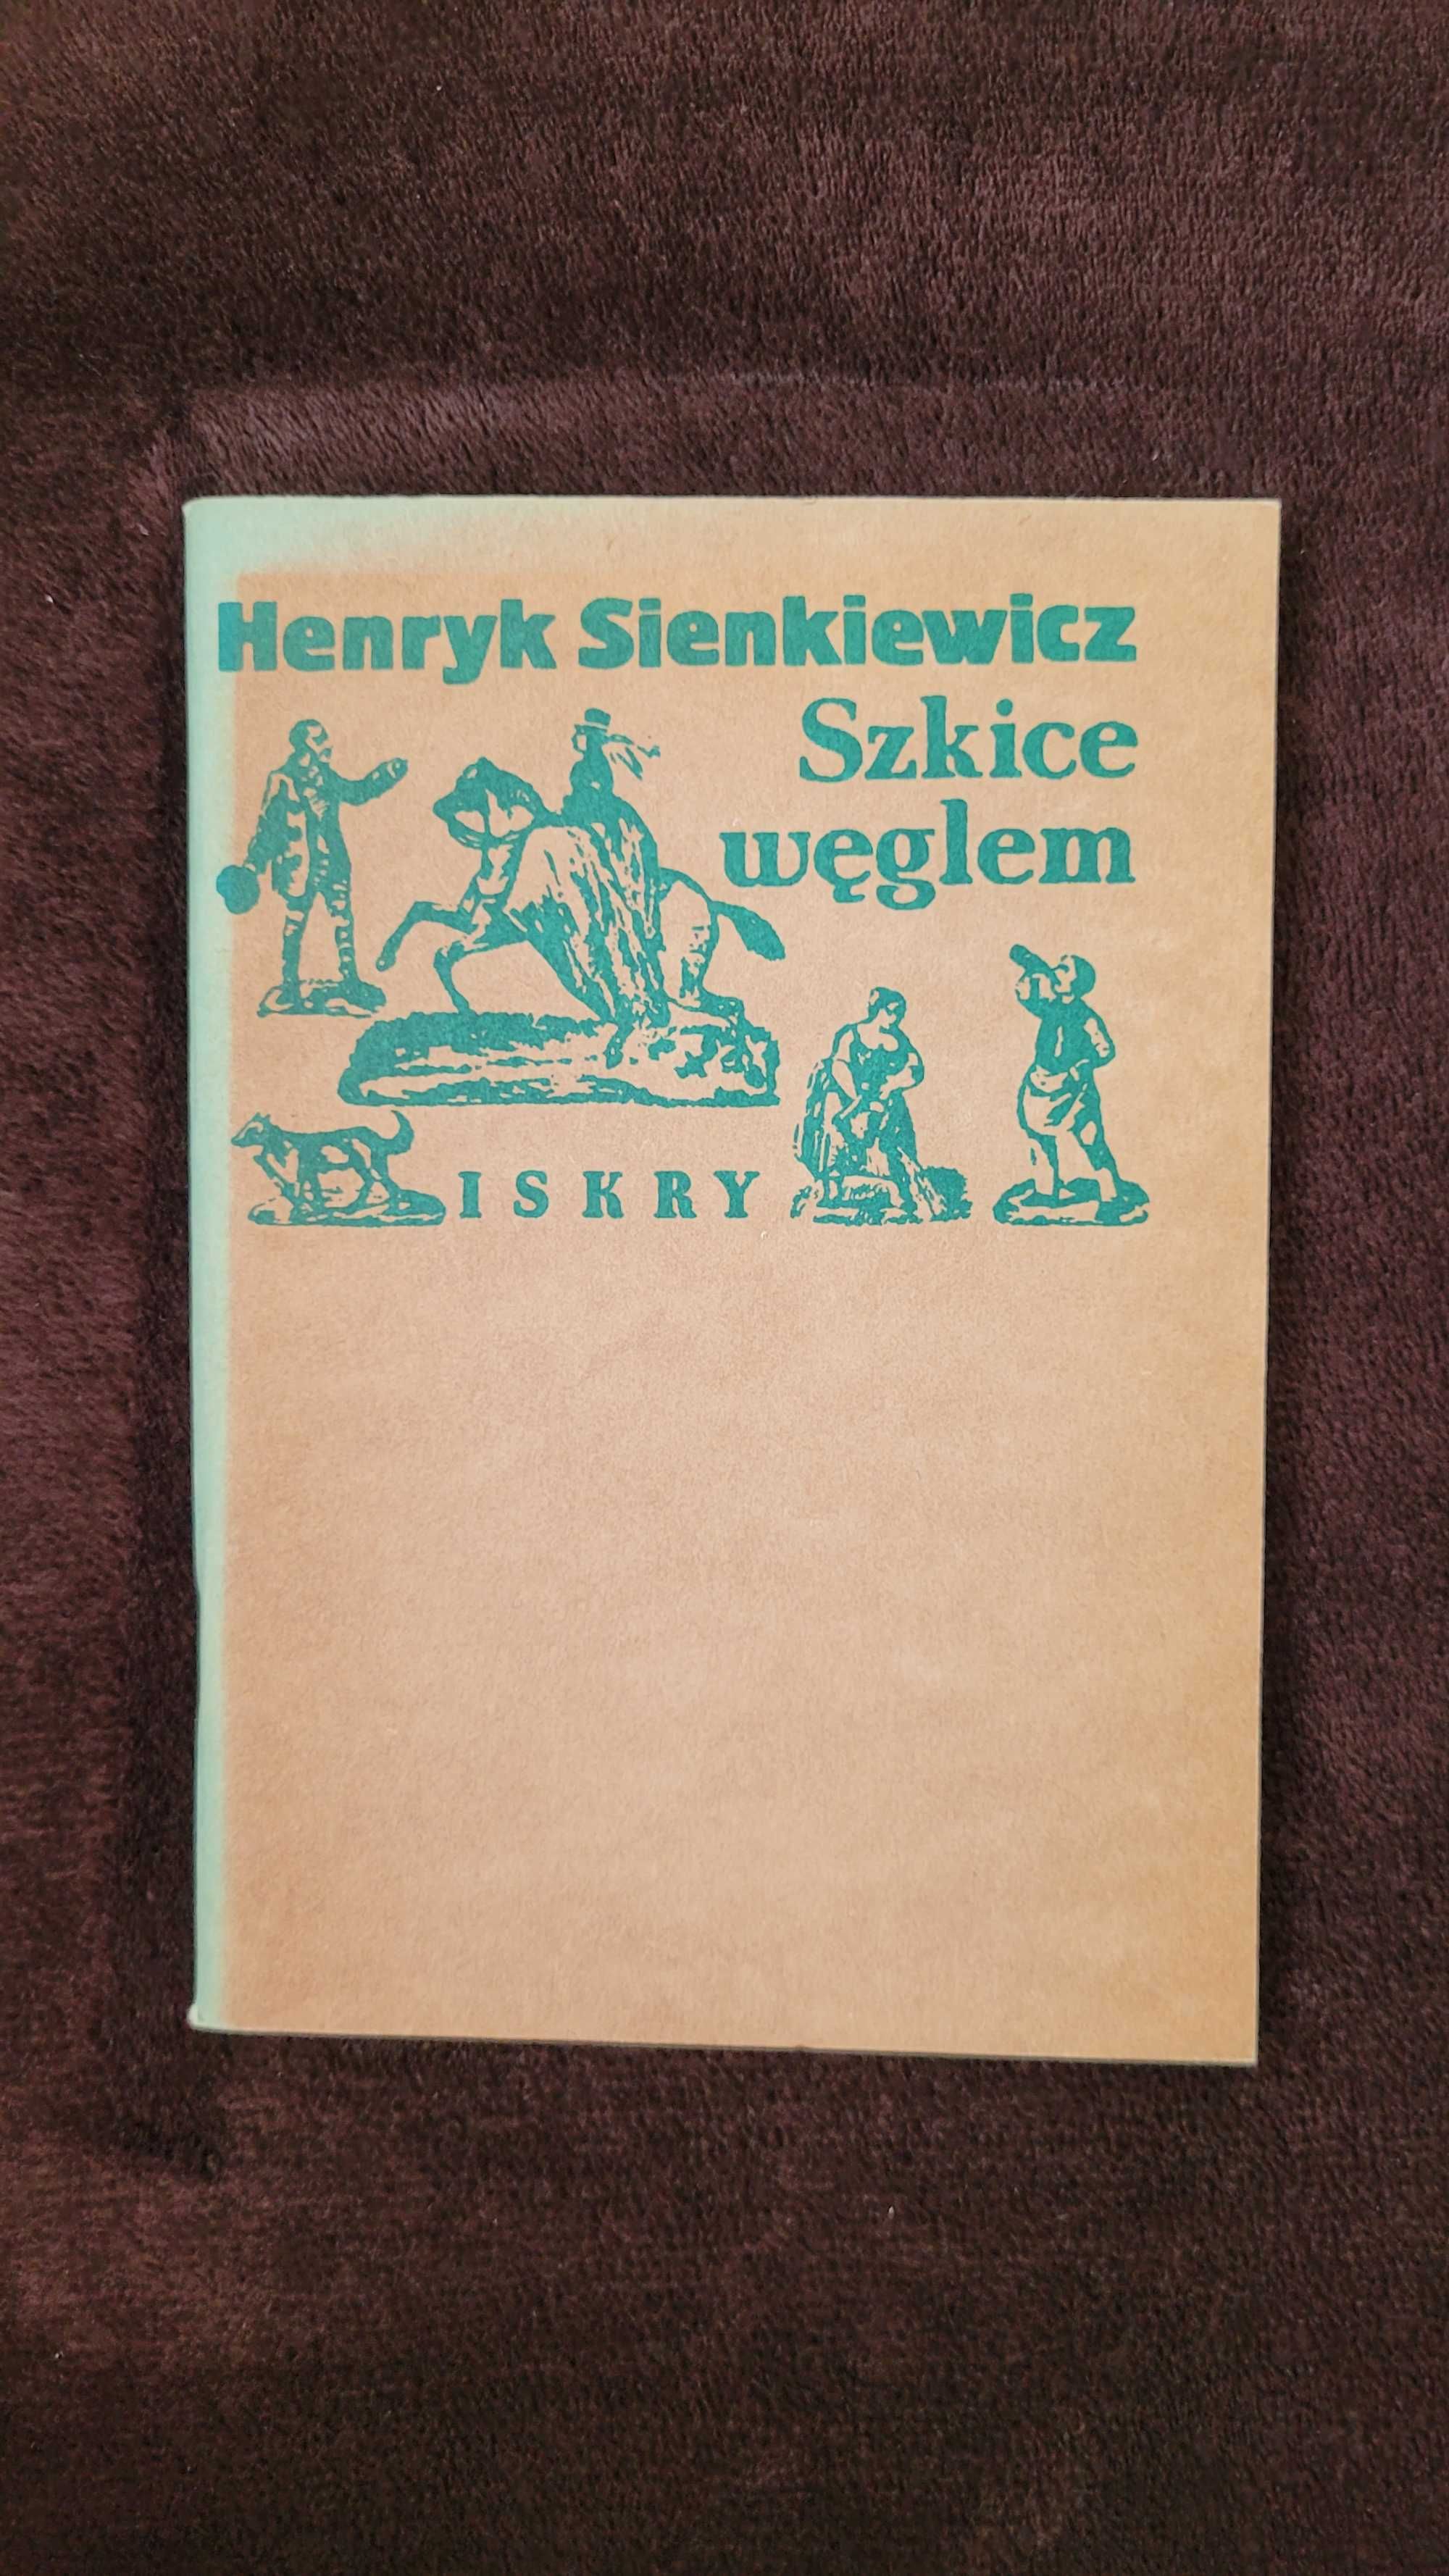 „Szkice węglem”, Henryk Sienkiewicz